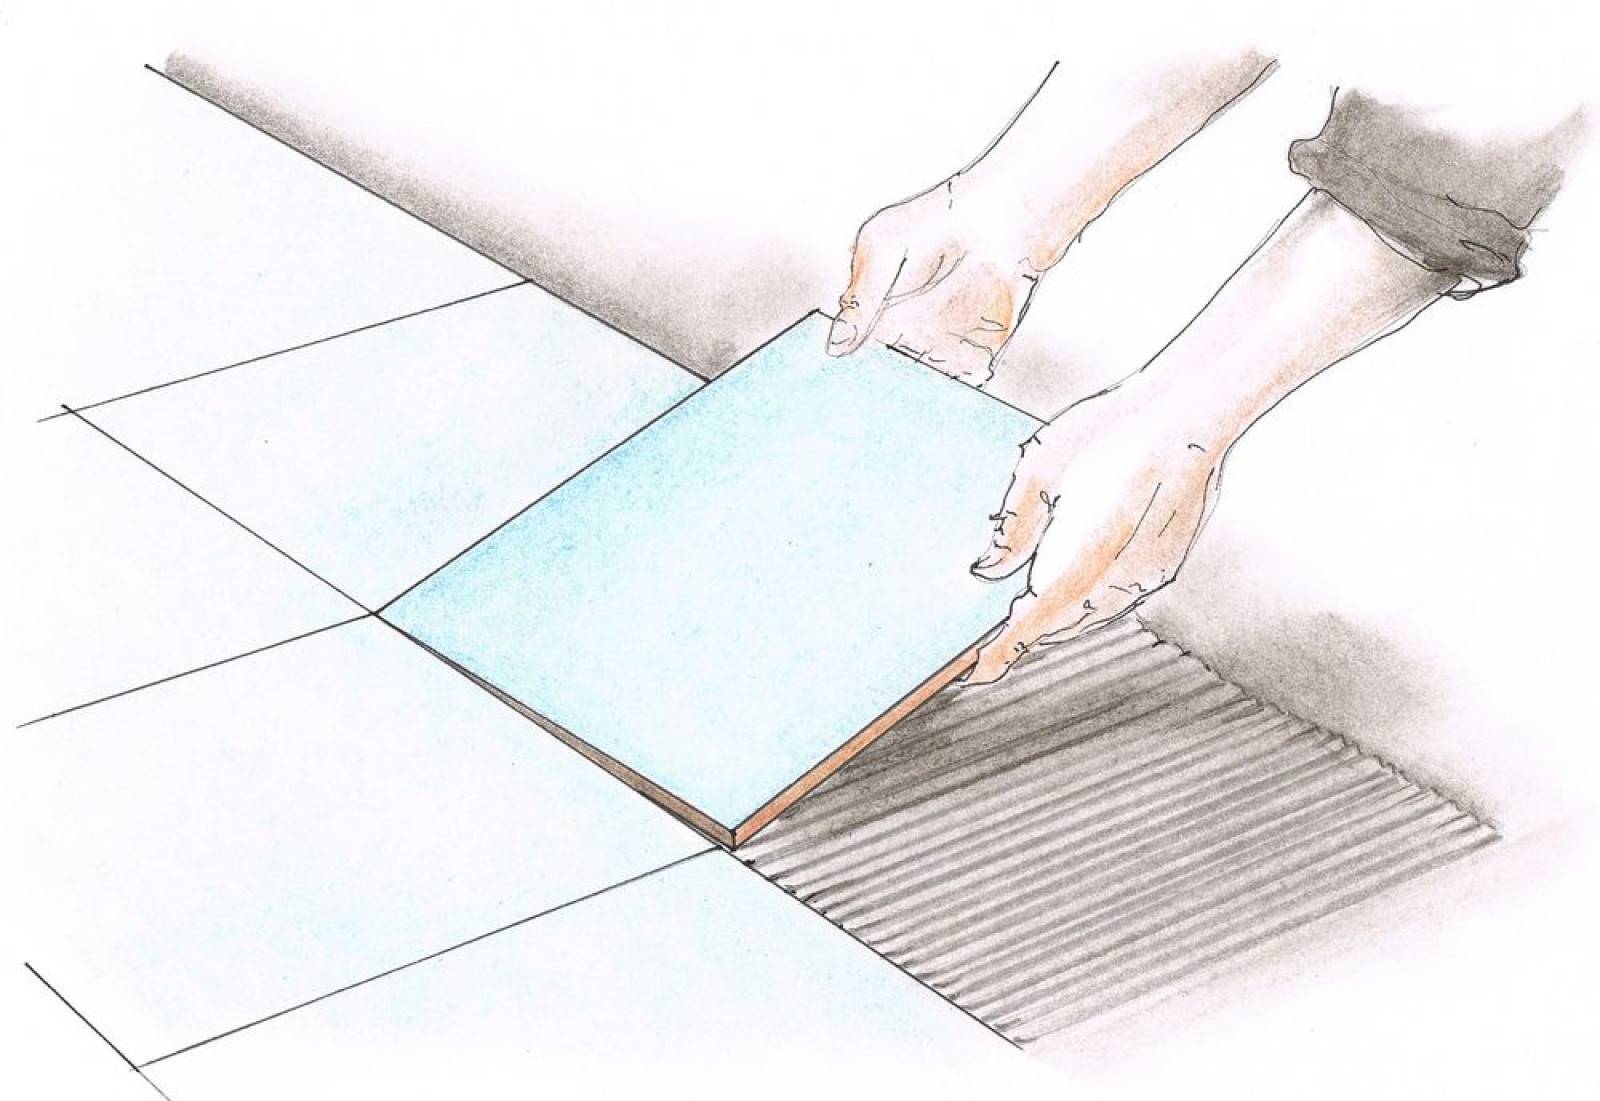 Укладка плитки на пол своими руками: простая технология, как резать плитку, раскладывать, размечать и расшивать швы (80 фото)